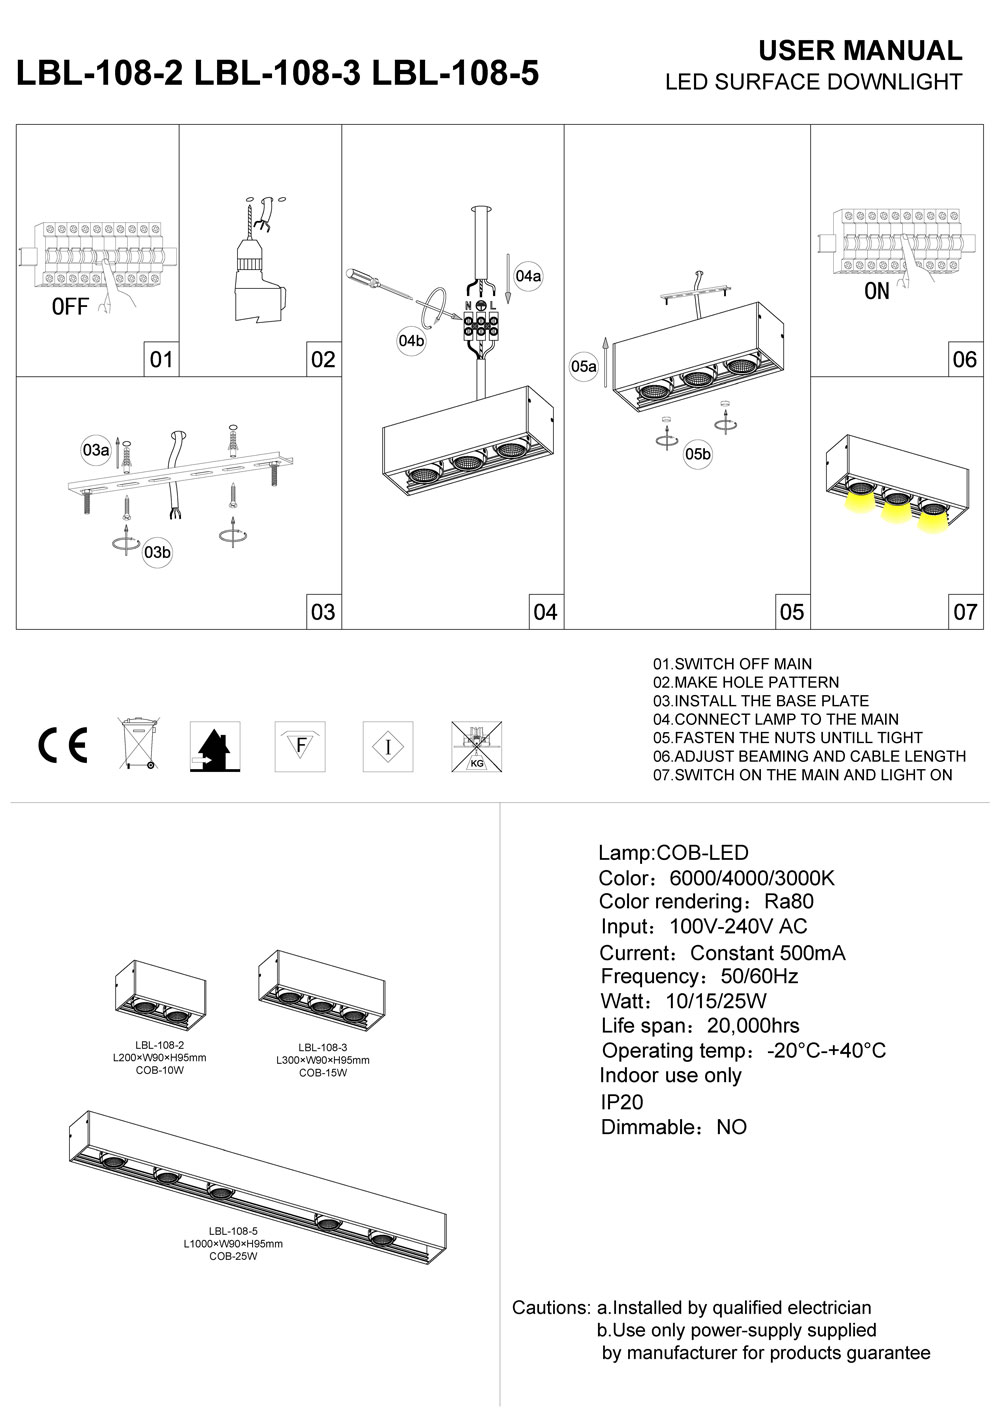 LBL-108-2-LBL-108-3-LBL-108 surface mounted LED downlight installation guide